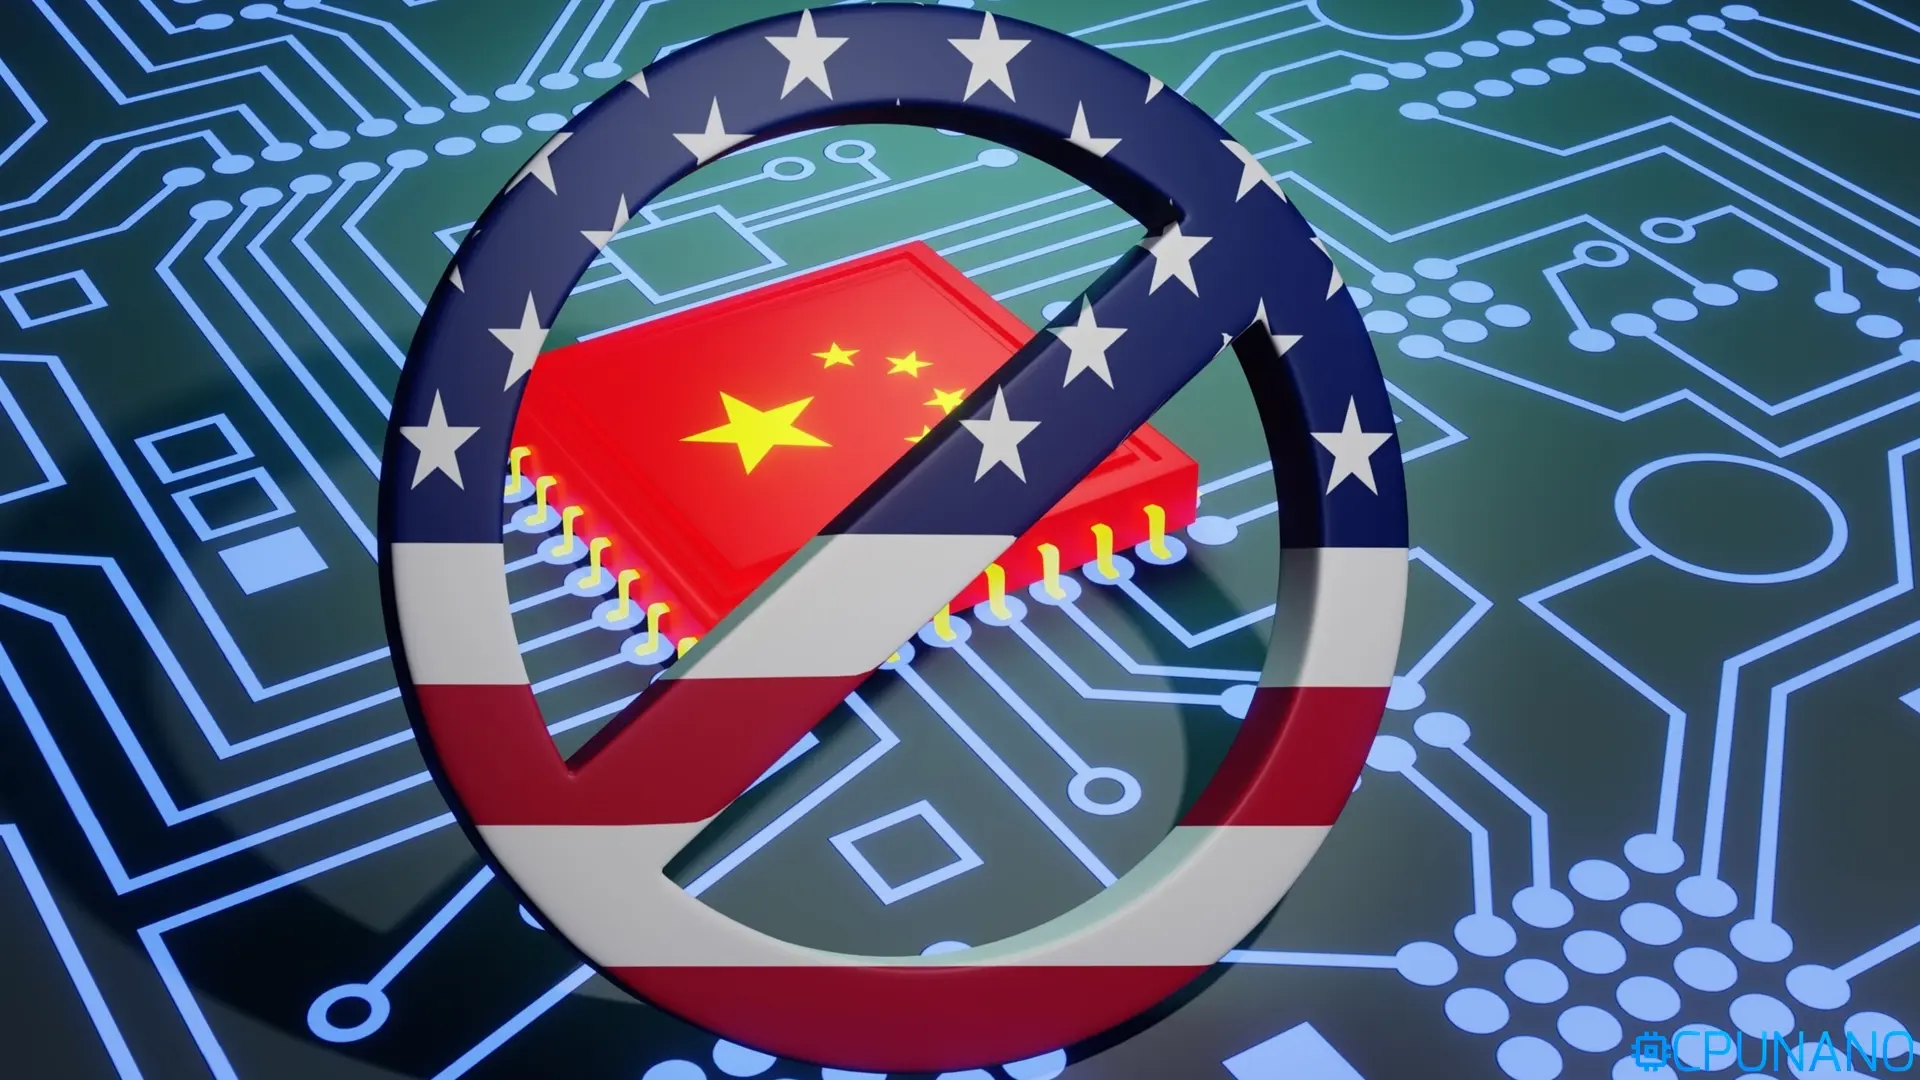 صناعة الرقائق في الصين غير متأثرة إلى حد كبير بالعقوبات الأمريكية | موقع  CPUNano